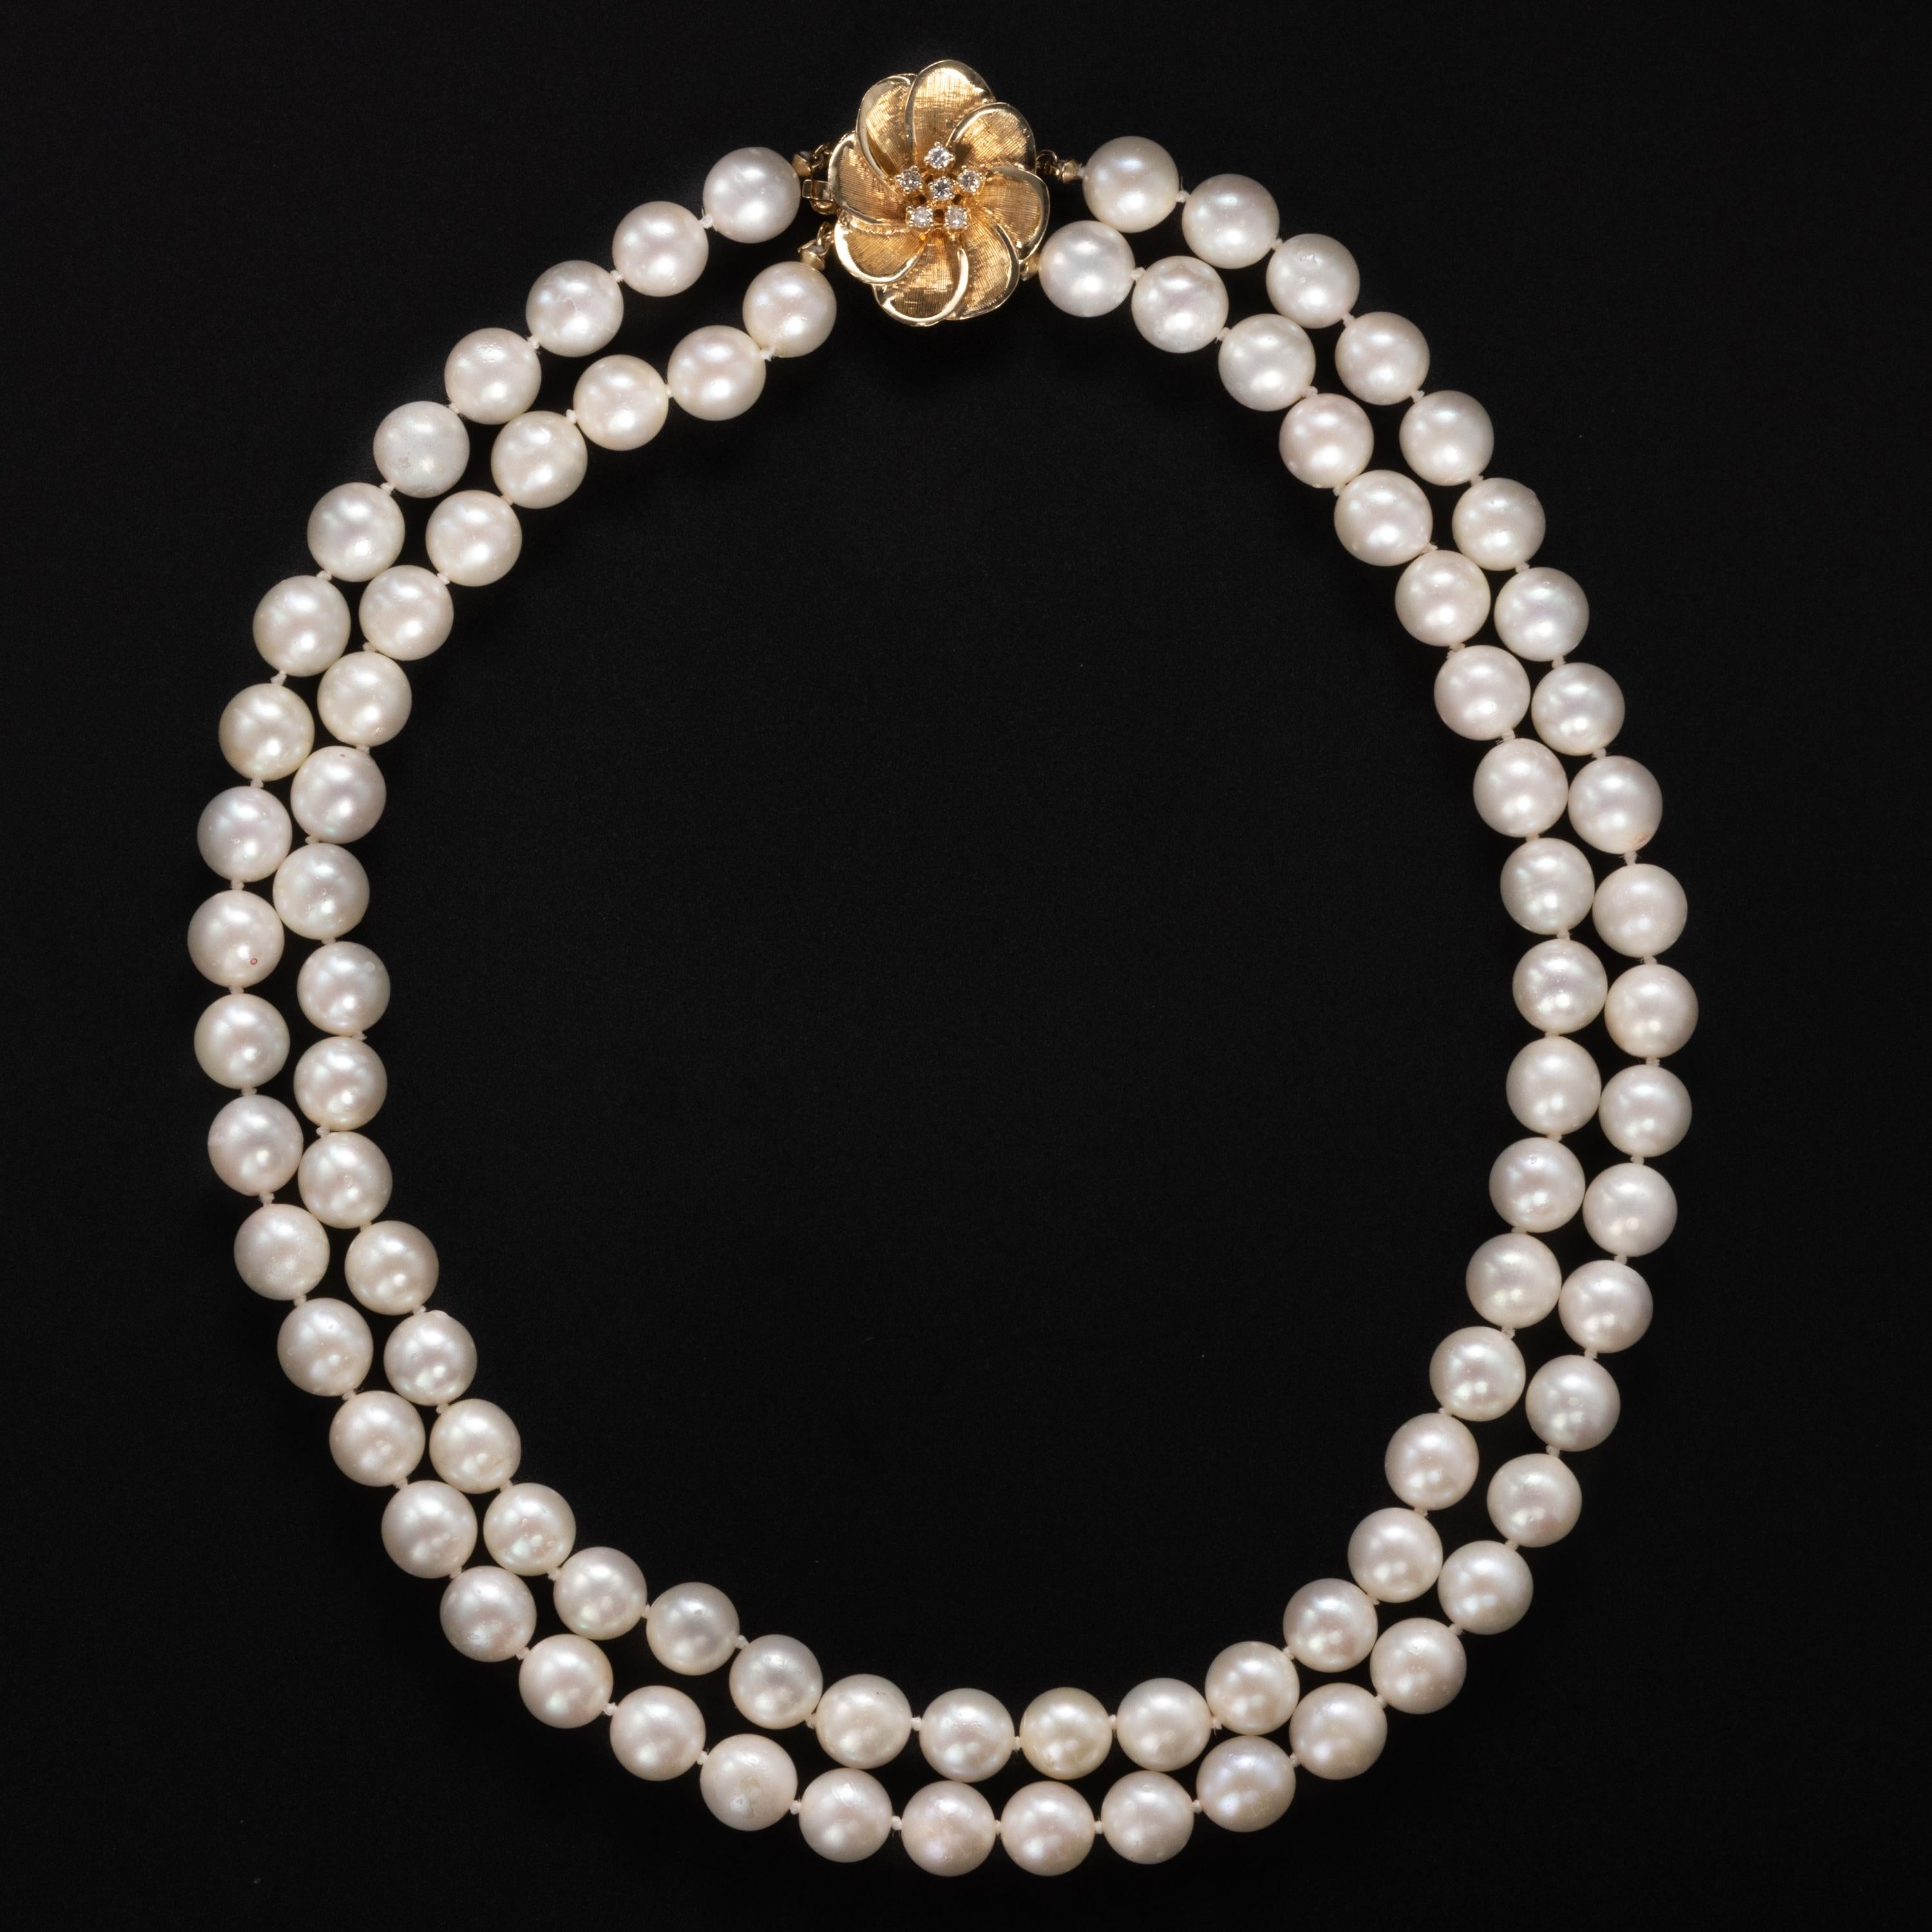 Dieser 16-Zoll-Strang aus Akoya-Zuchtperlen im Vintage-Stil zeichnet sich durch große und leuchtende Perlen aus. 8.31mm, 8.24mm, 8.19mm, 8.04mm, 8.29mm, 8.43mm, 8.51mm: das sind die Maße, die ich zufällig von den Perlen genommen habe.  In der Welt